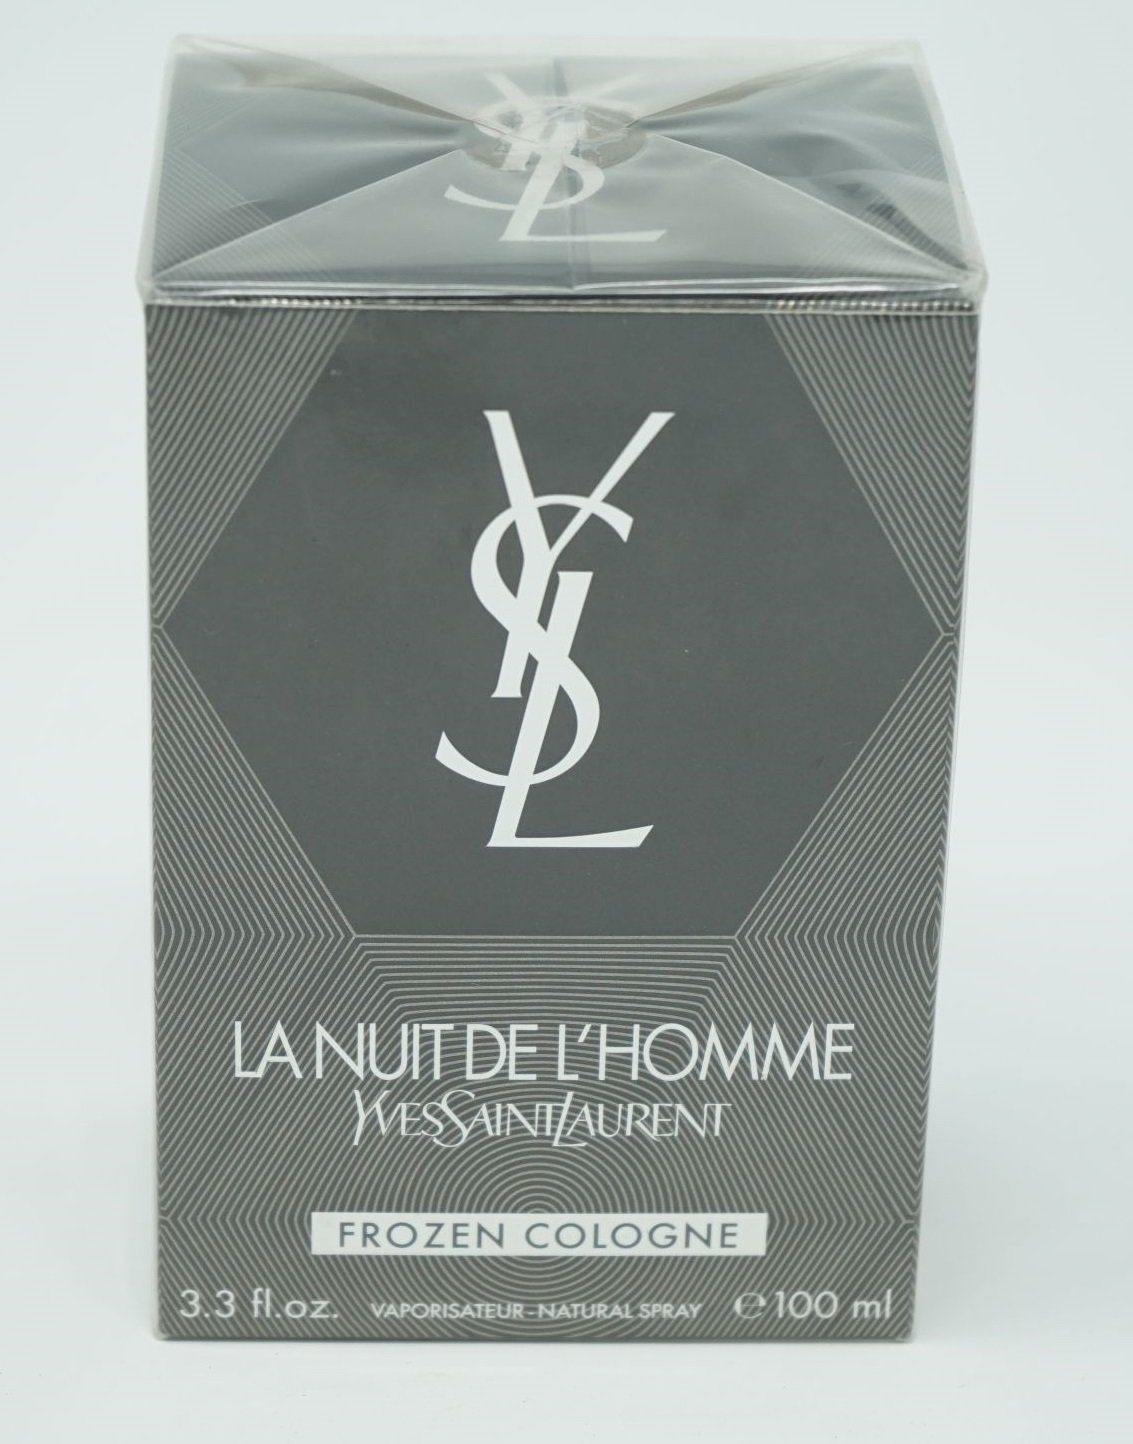 YVES SAINT LAURENT Eau de Cologne Yves Saint Laurent La Nuit de L'Homme Frozen Cologne Spray 100 ml